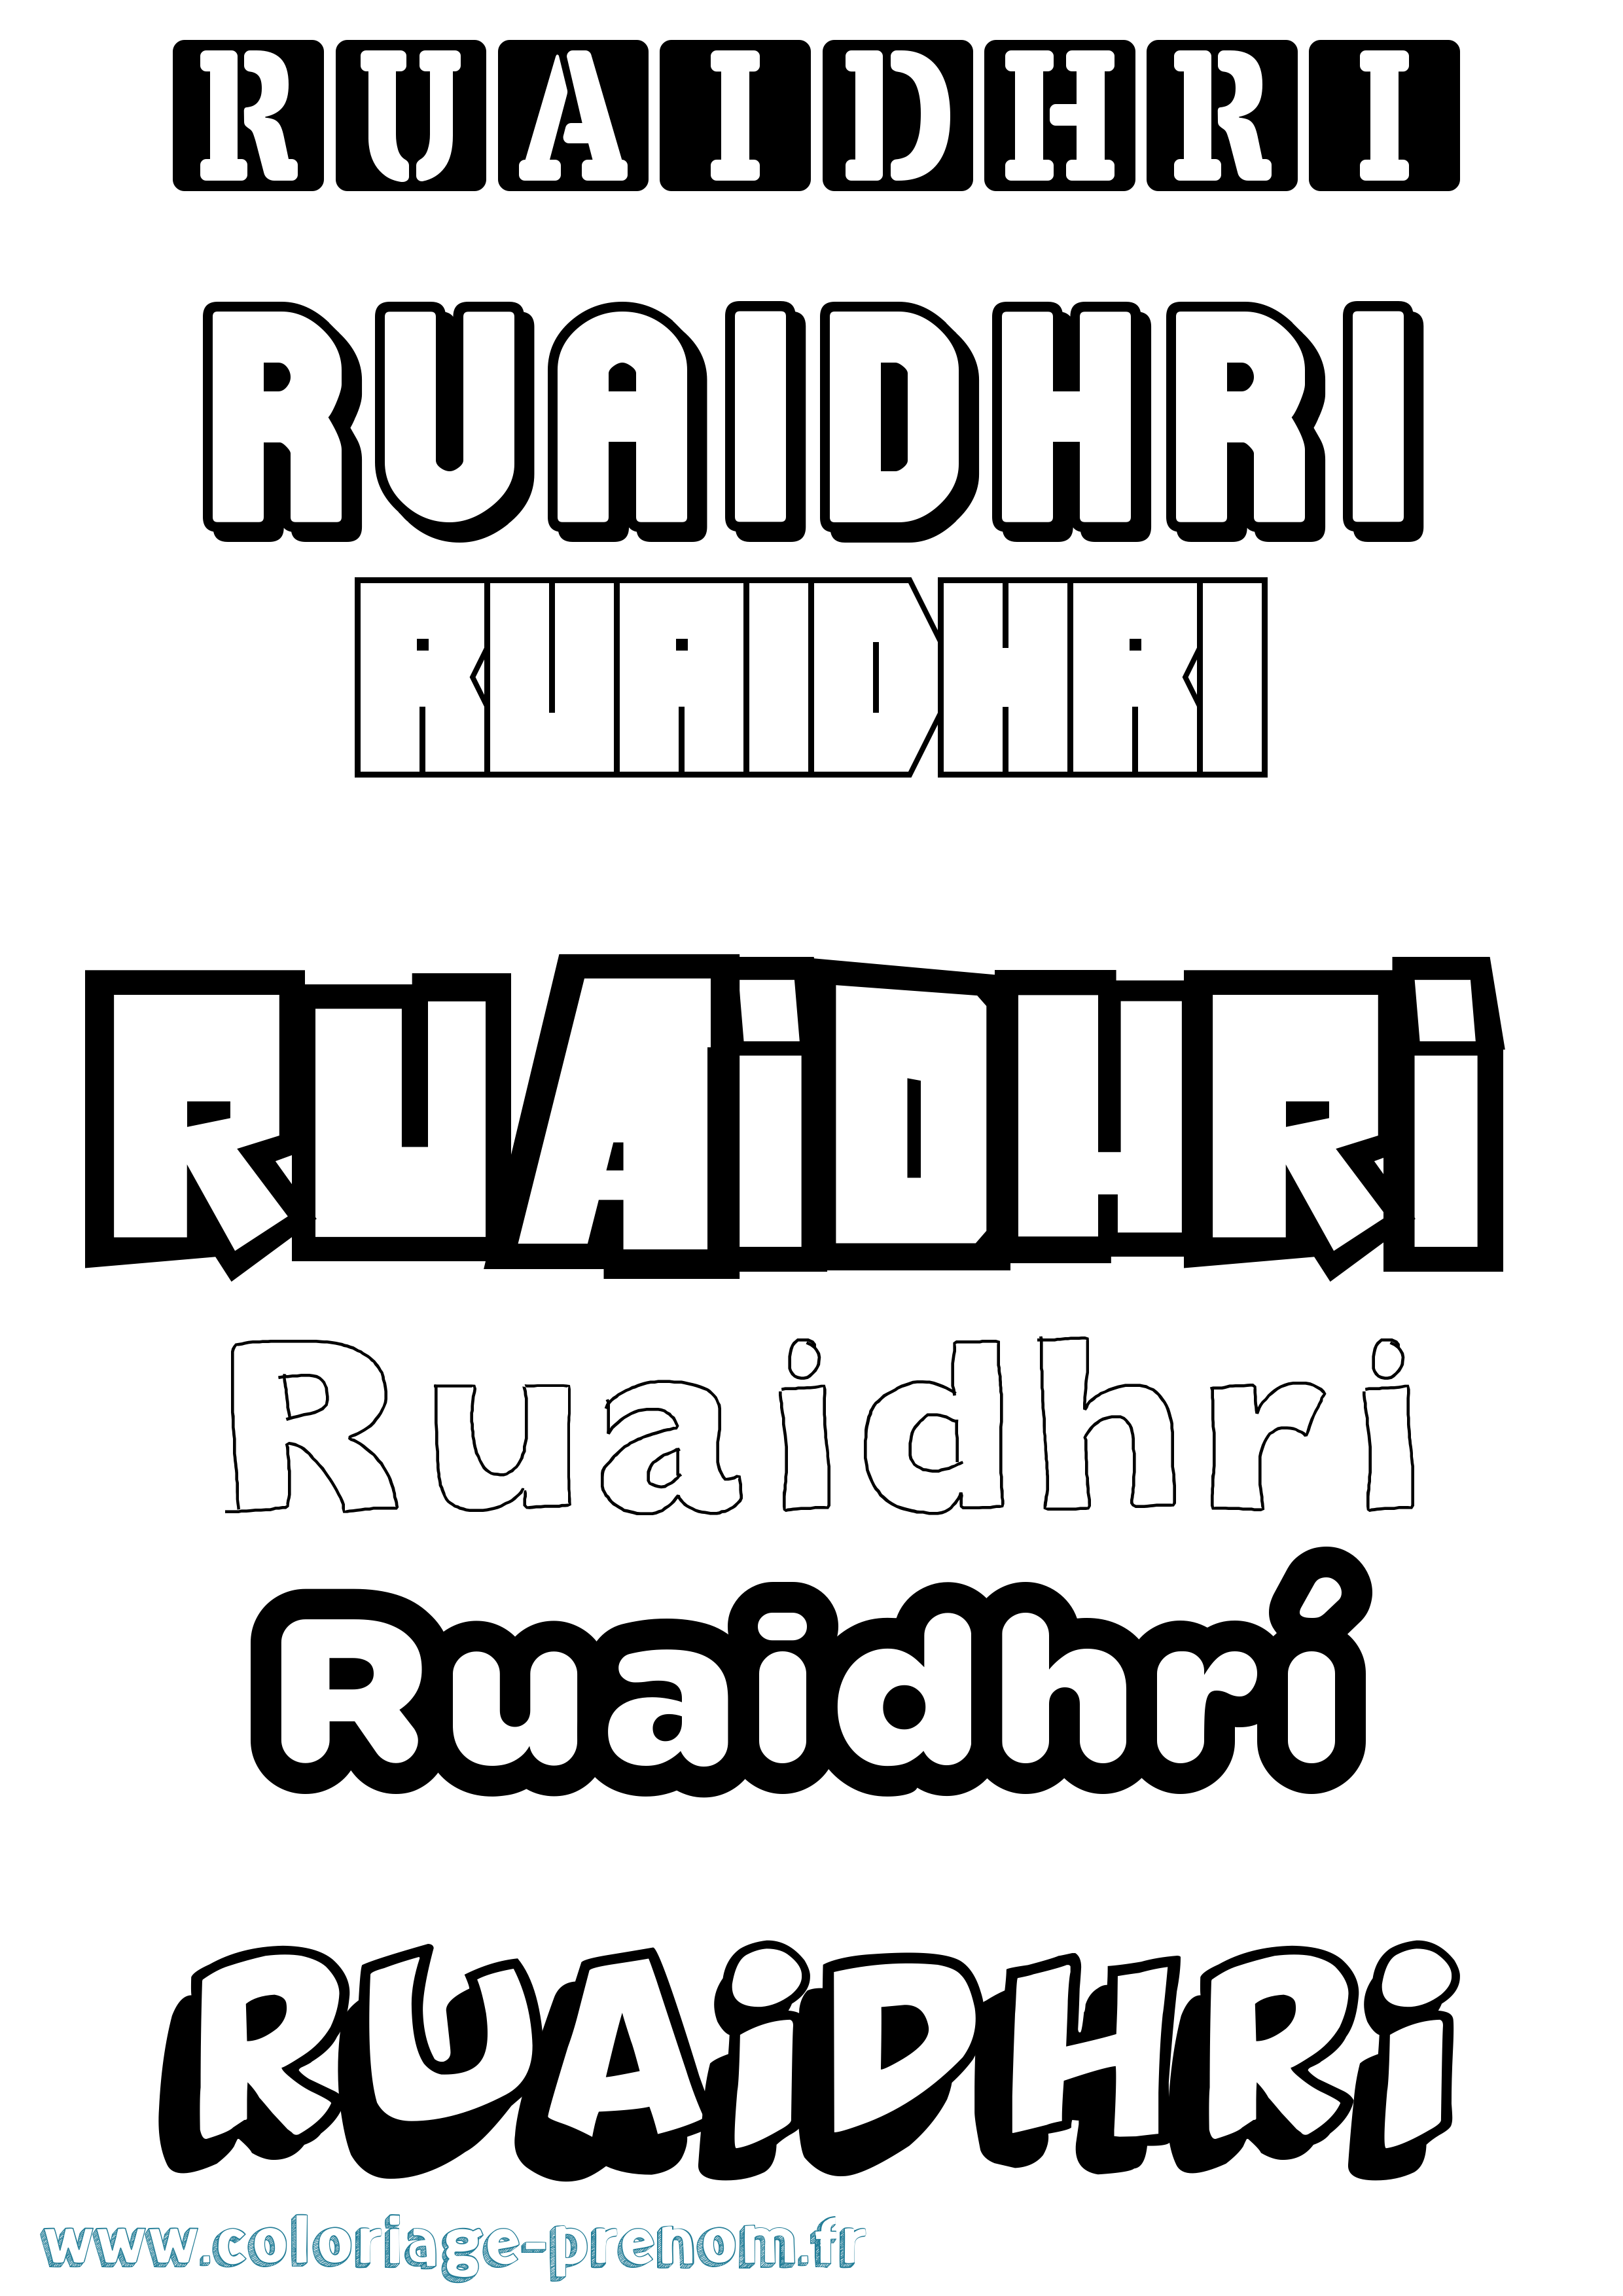 Coloriage prénom Ruaidhrí Simple